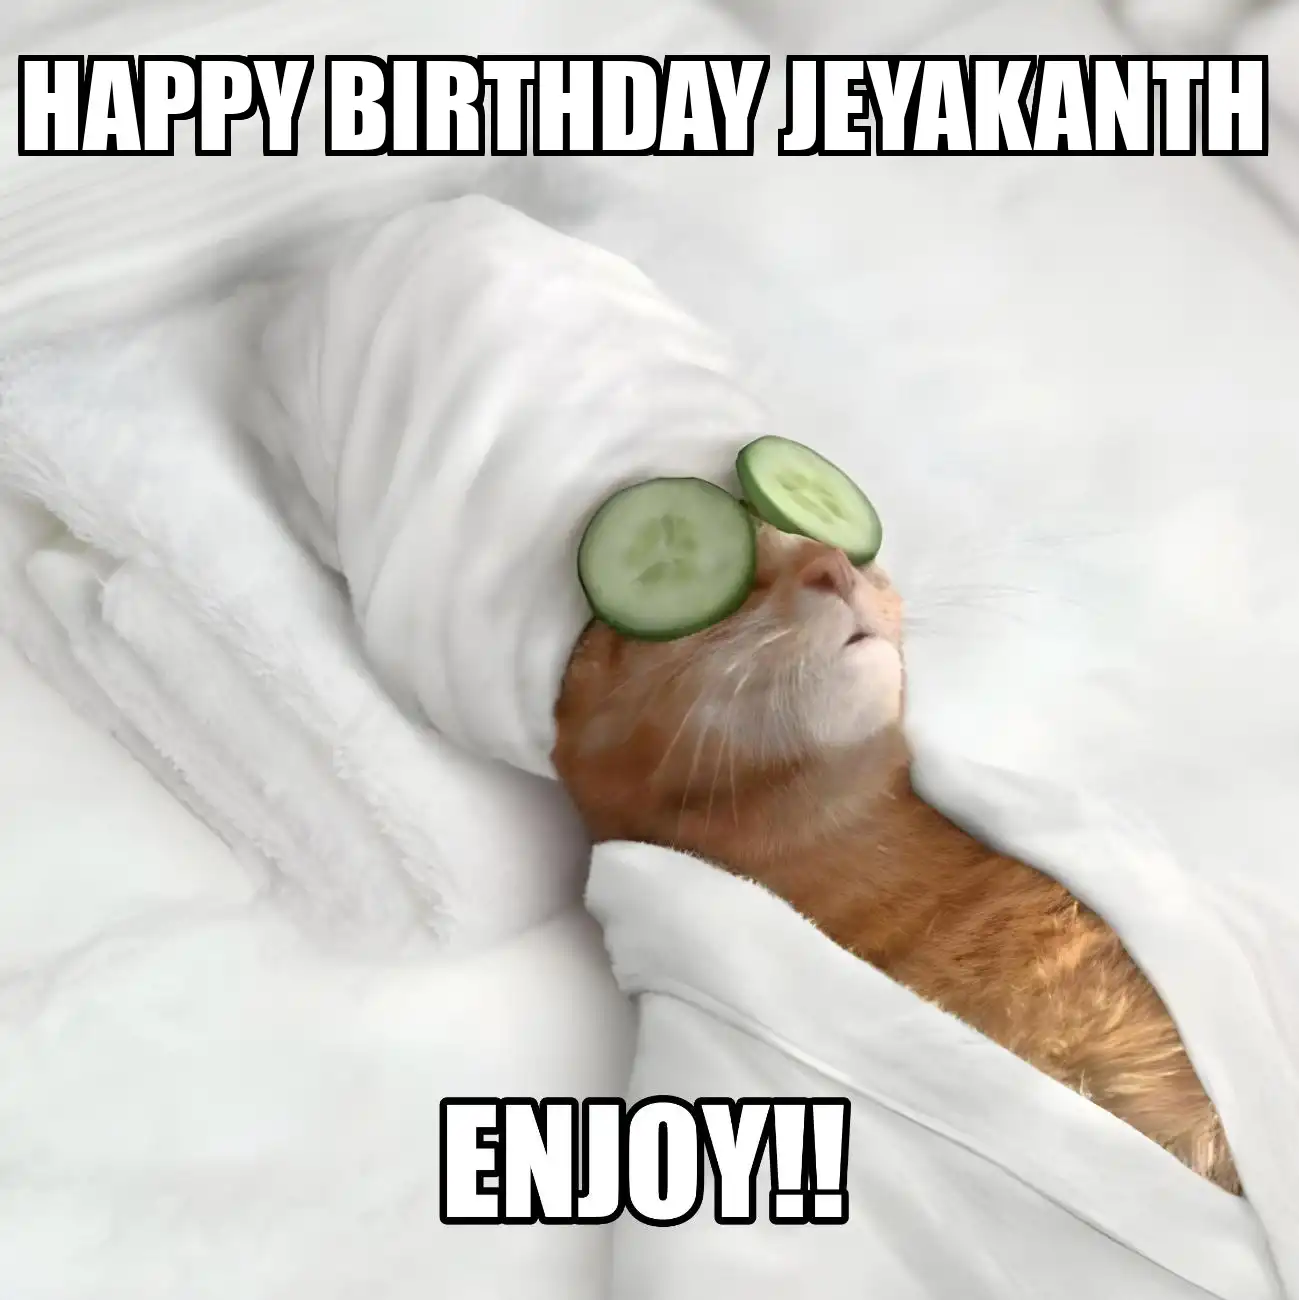 Happy Birthday Jeyakanth Enjoy Cat Meme